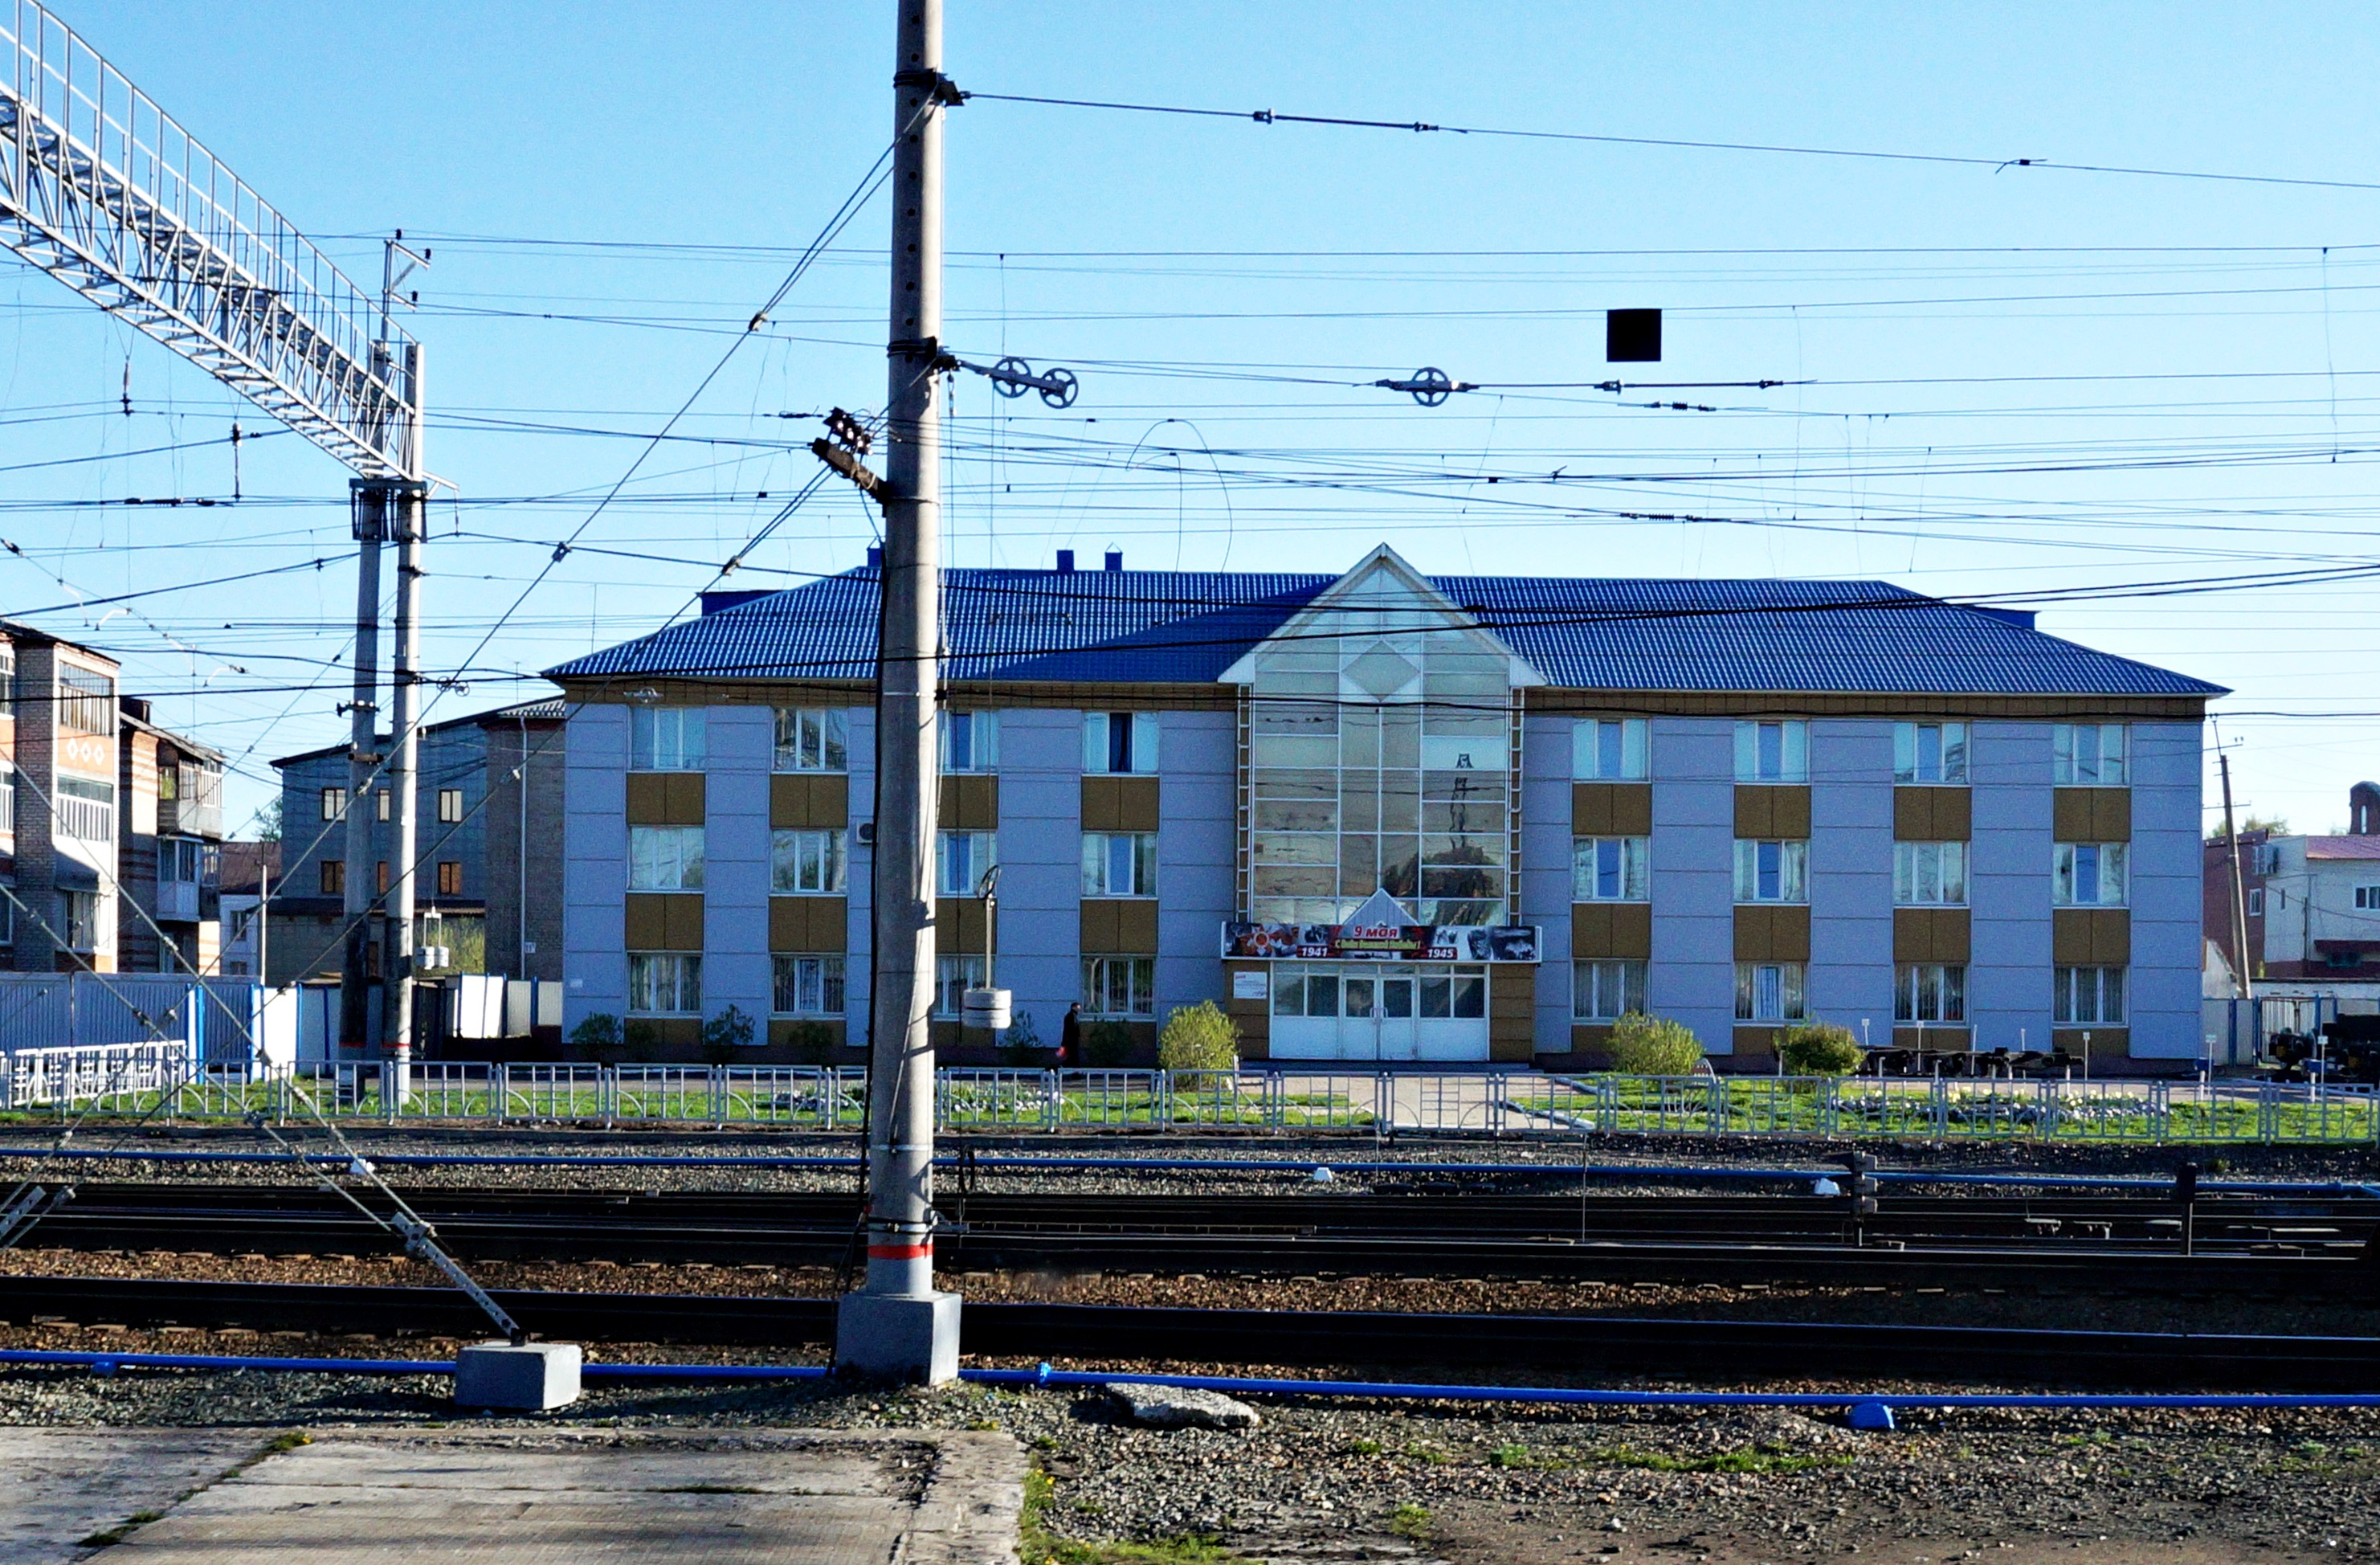 станция тайга вокзал